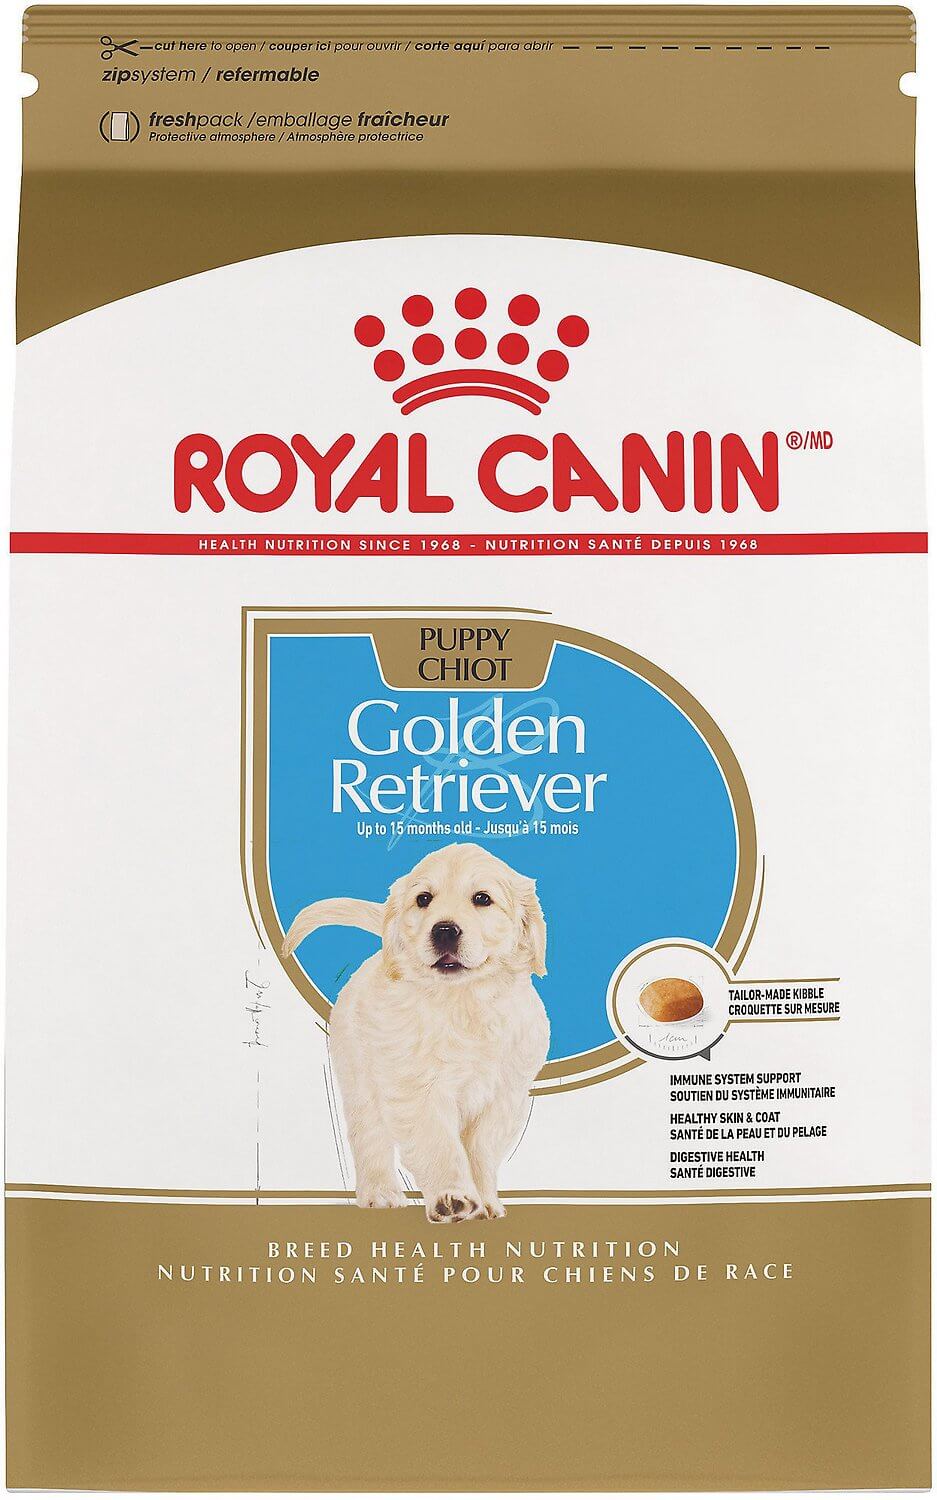 homemade dog food for golden retrievers